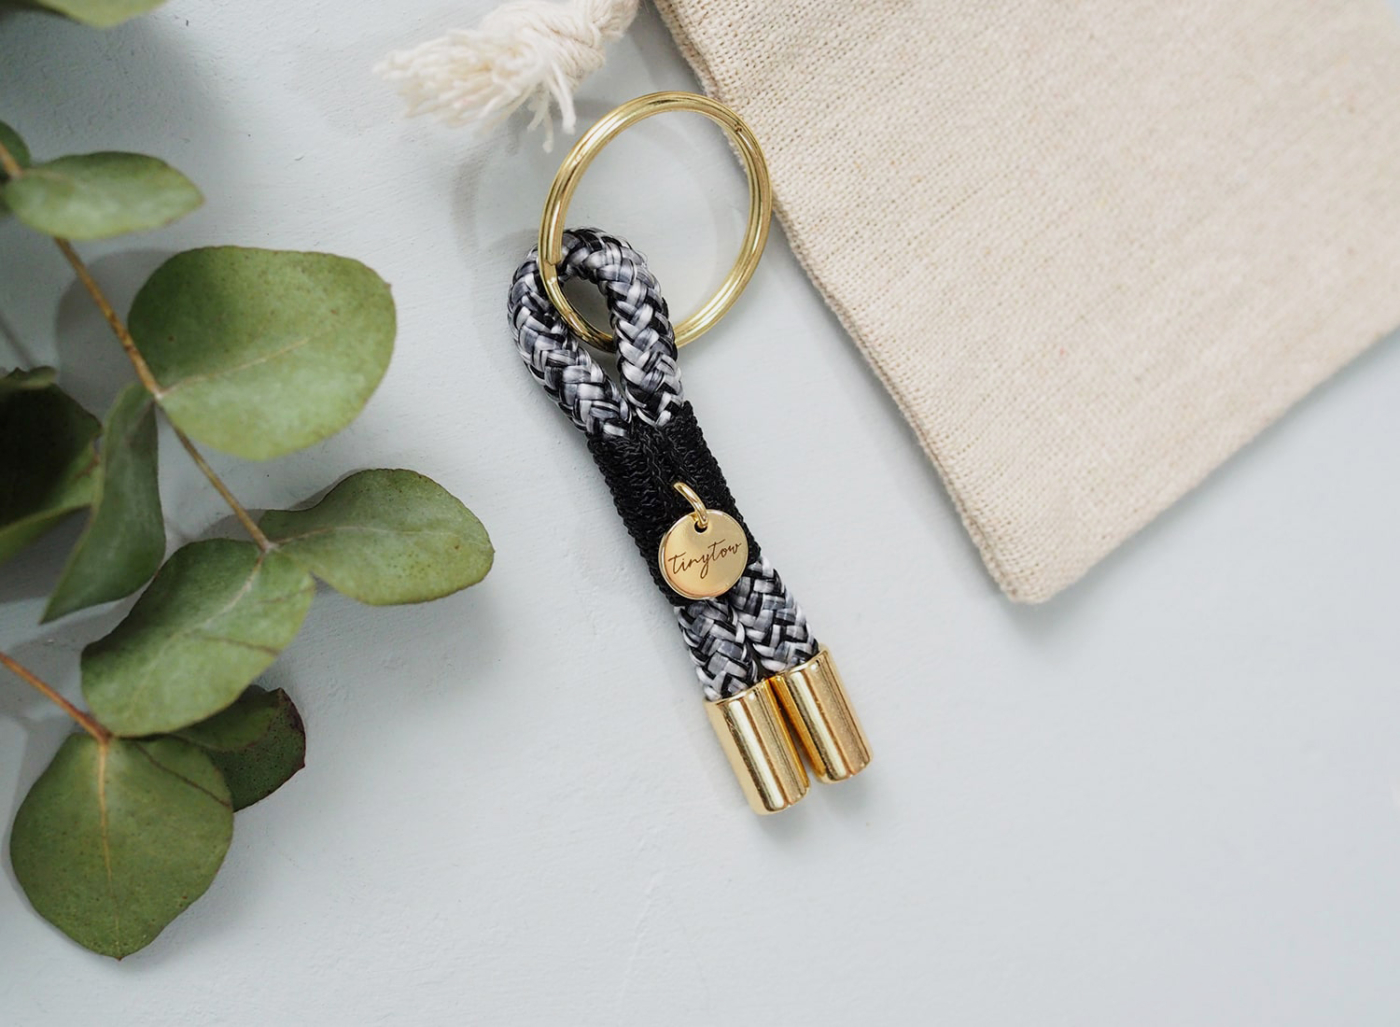 Schlüsselanhänger aus Tau mit schwarz-weißem Tauseil, schwarzer Takelung und goldenen Details.